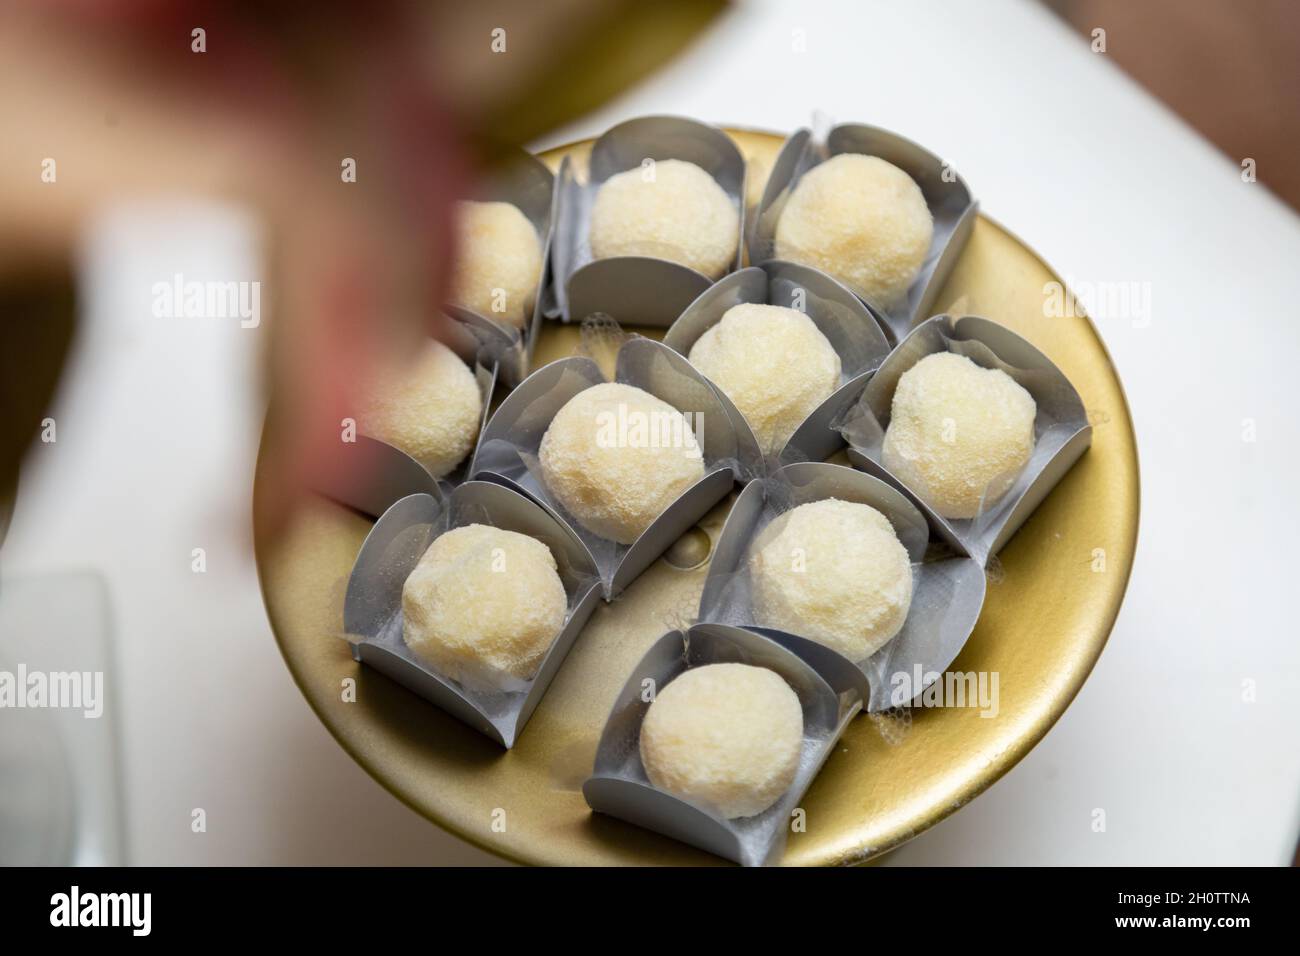 Particolare di dolci a base di latte in polvere e arrotolati, disposti all'interno di un vassoio, sul tavolo da festa. Foto Stock